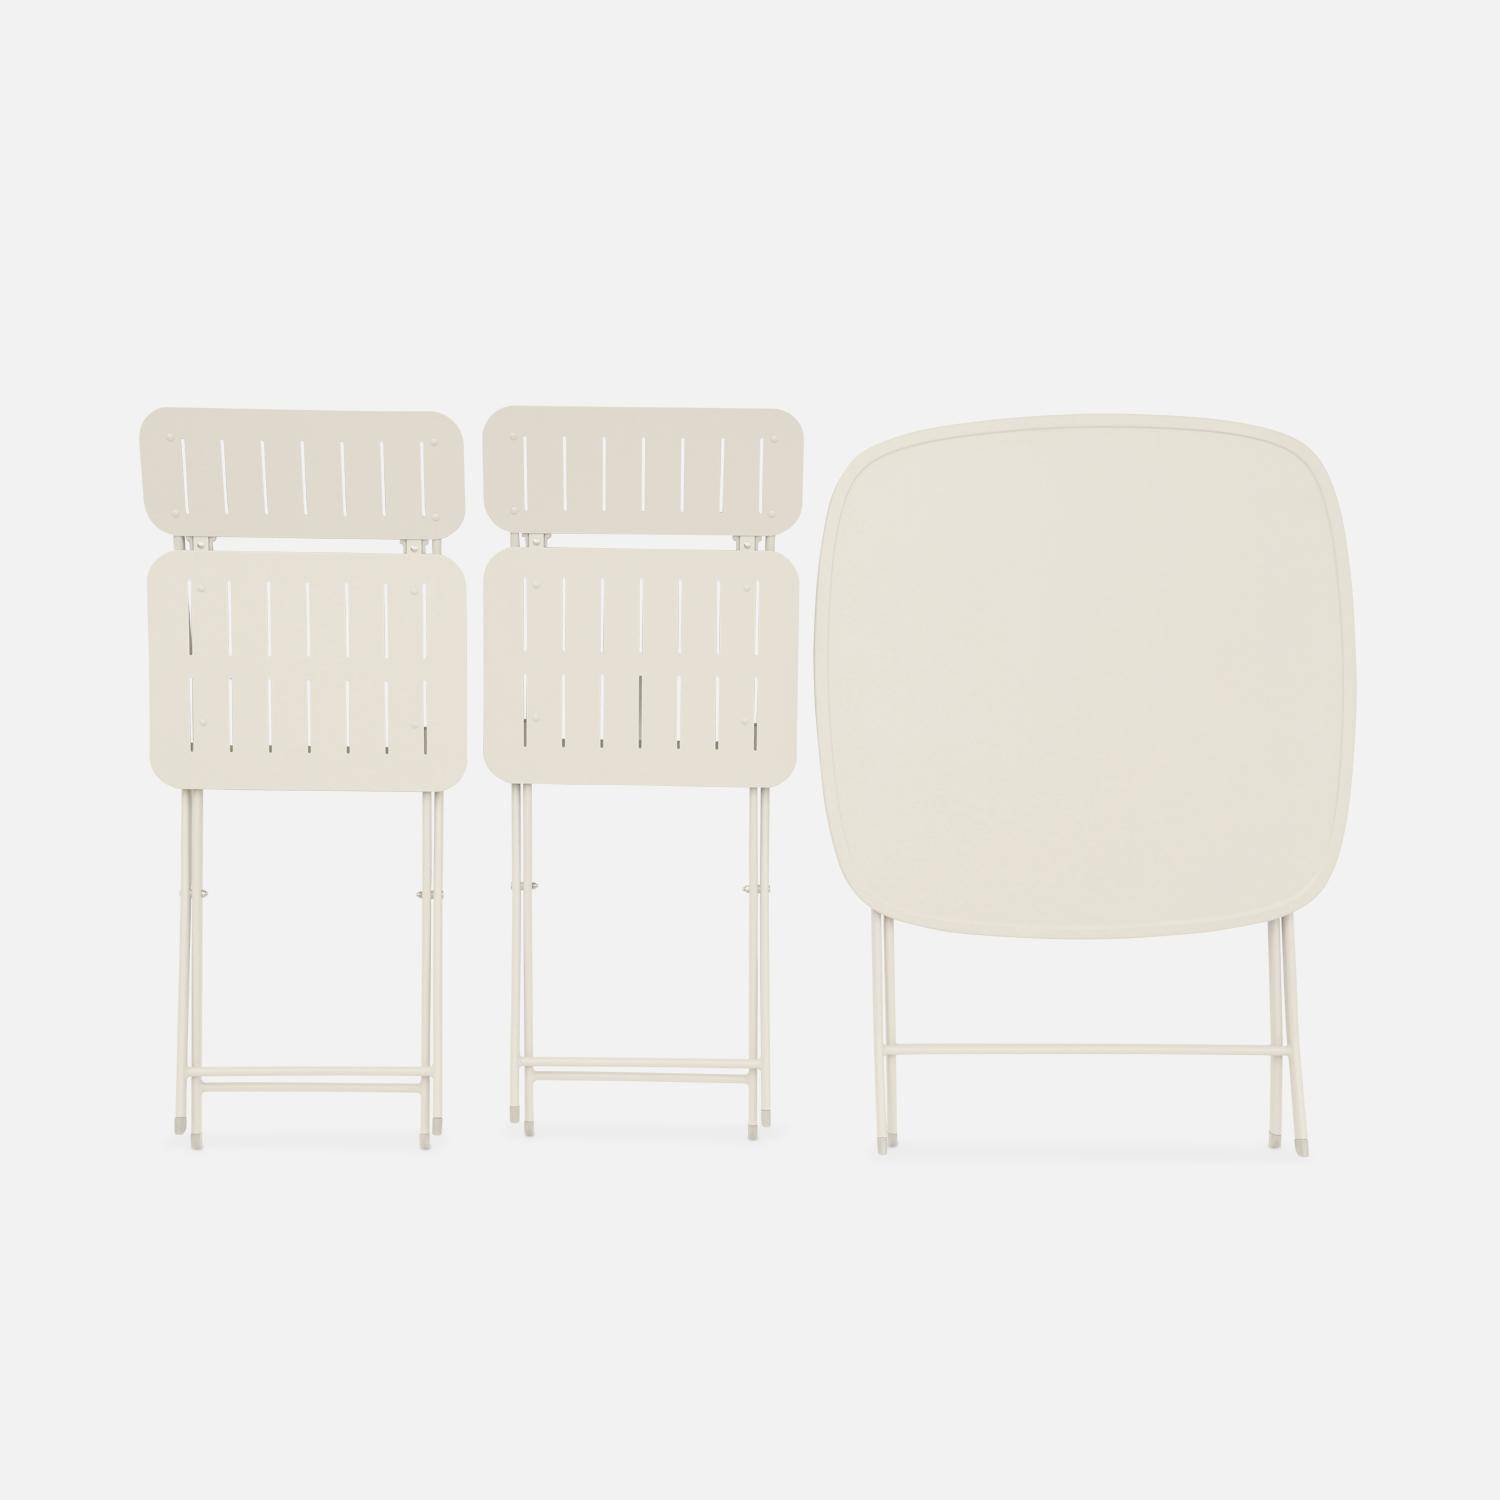 Table de jardin type bistrot pliable beige avec 2 chaises également pliables en acier galvanisé robuste Photo4